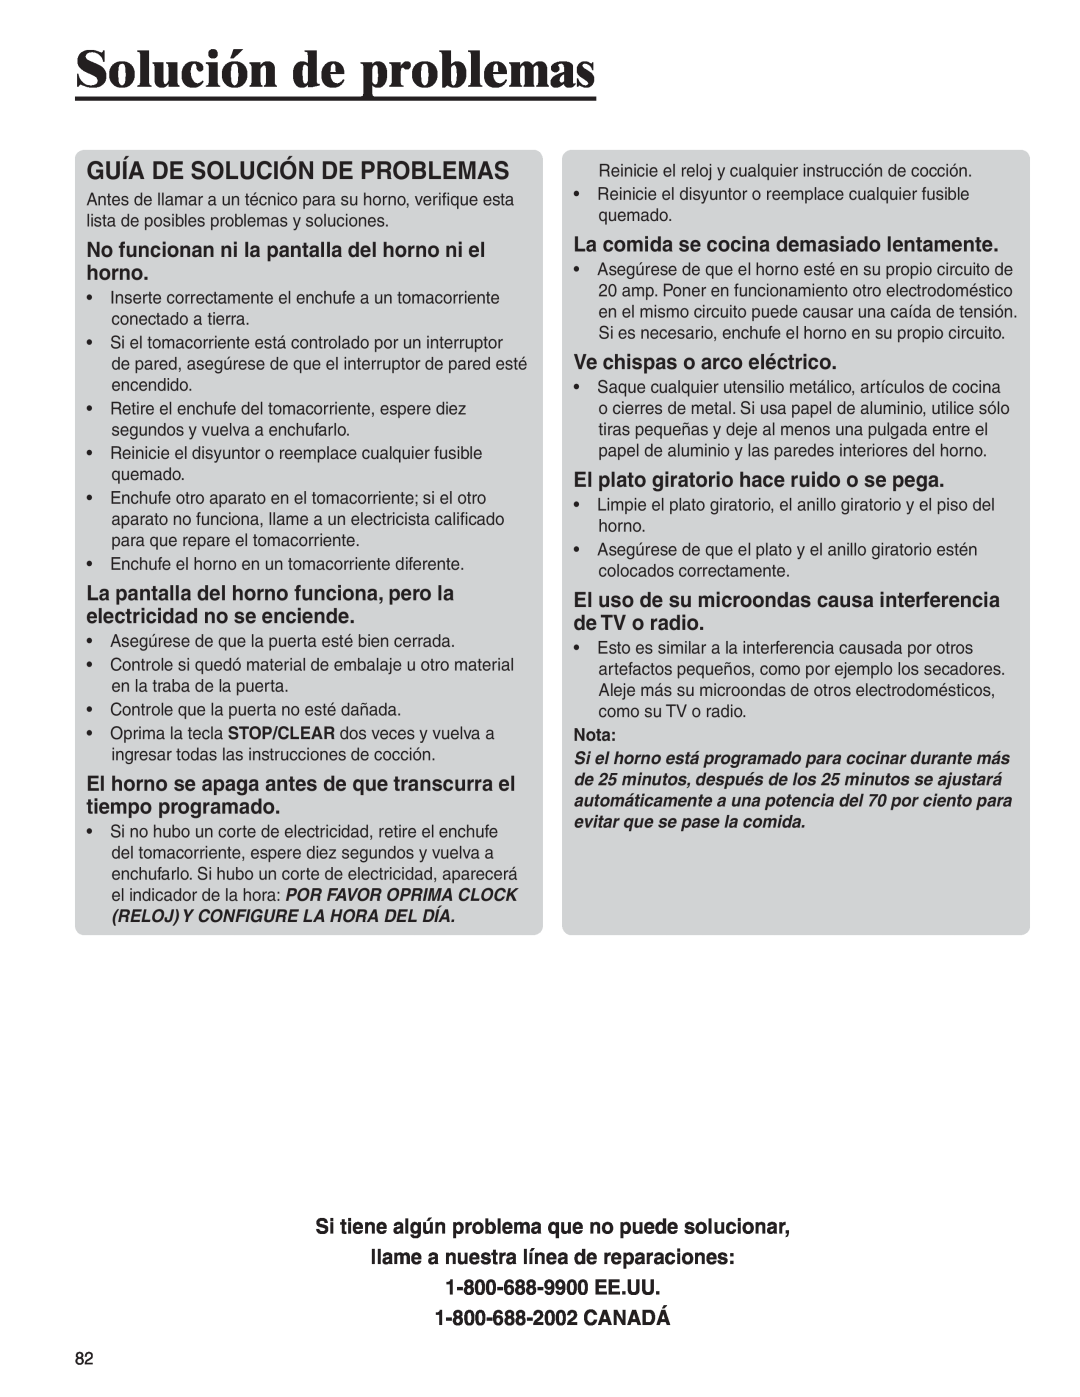 Amana AMC6158BAB, AMC6158BCB important safety instructions Solución de problemas, Guía De Solución De Problemas 